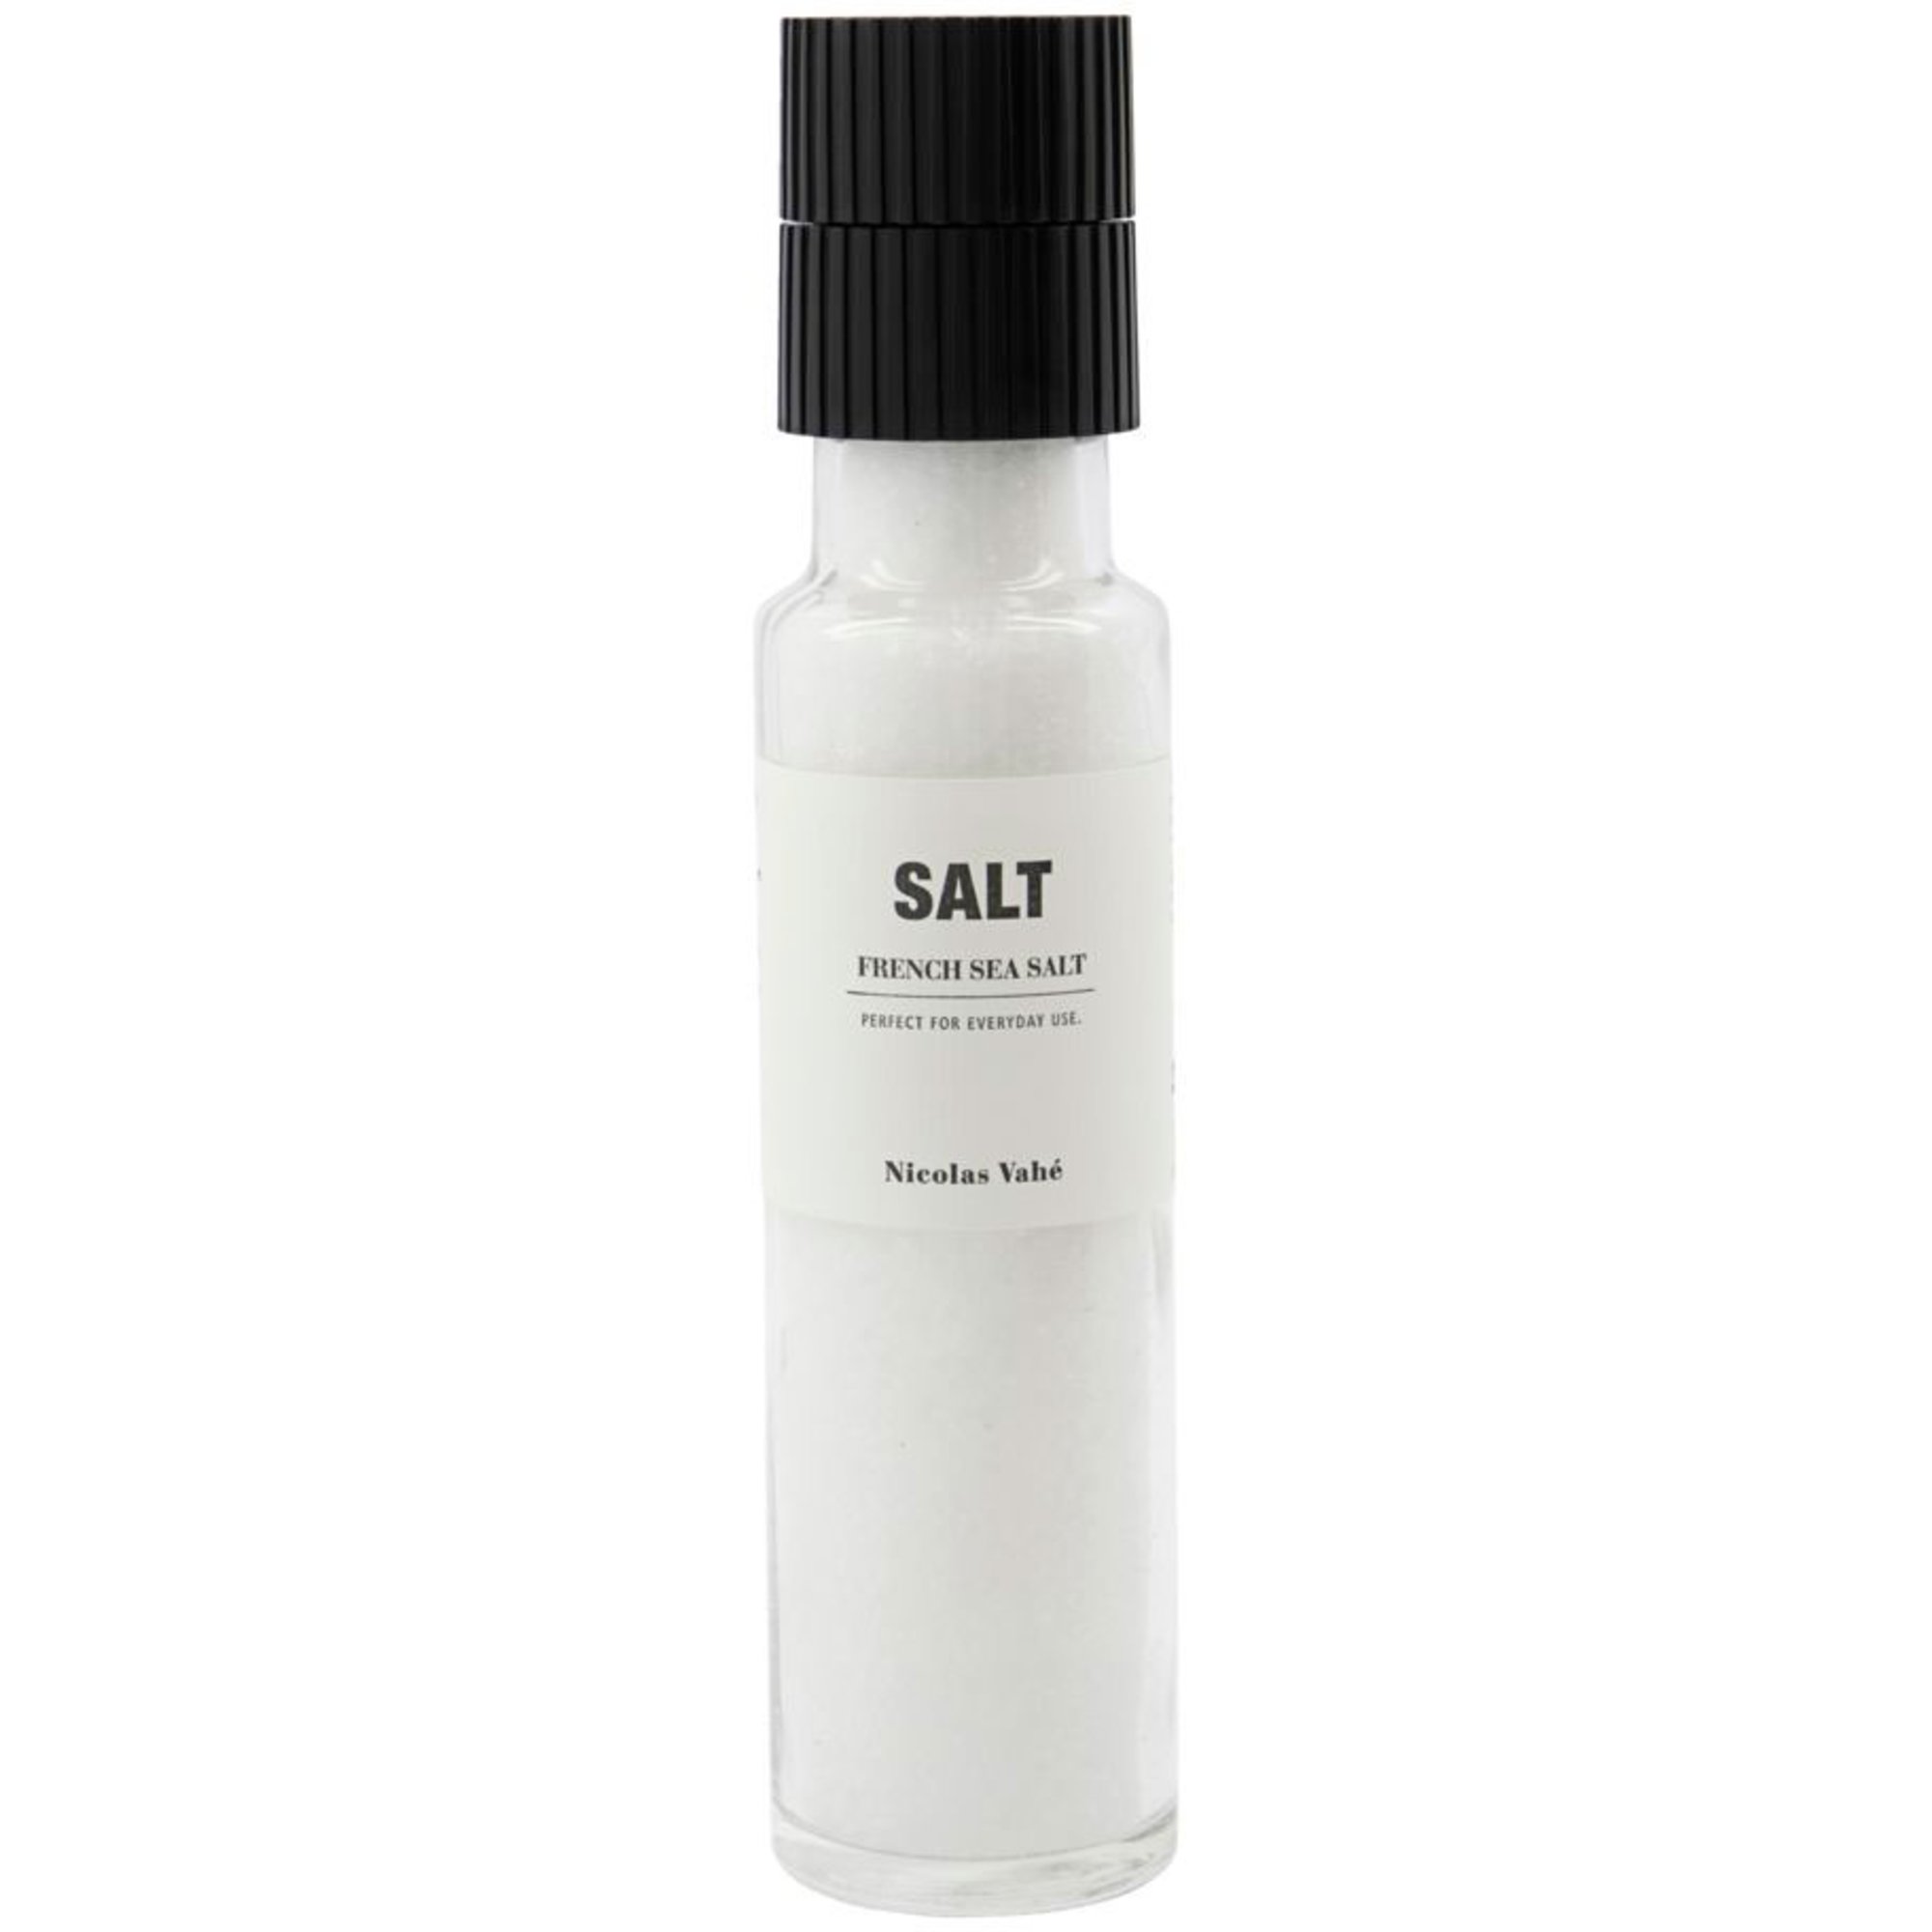 Nicolas Vahé French Sea Salt 335 g